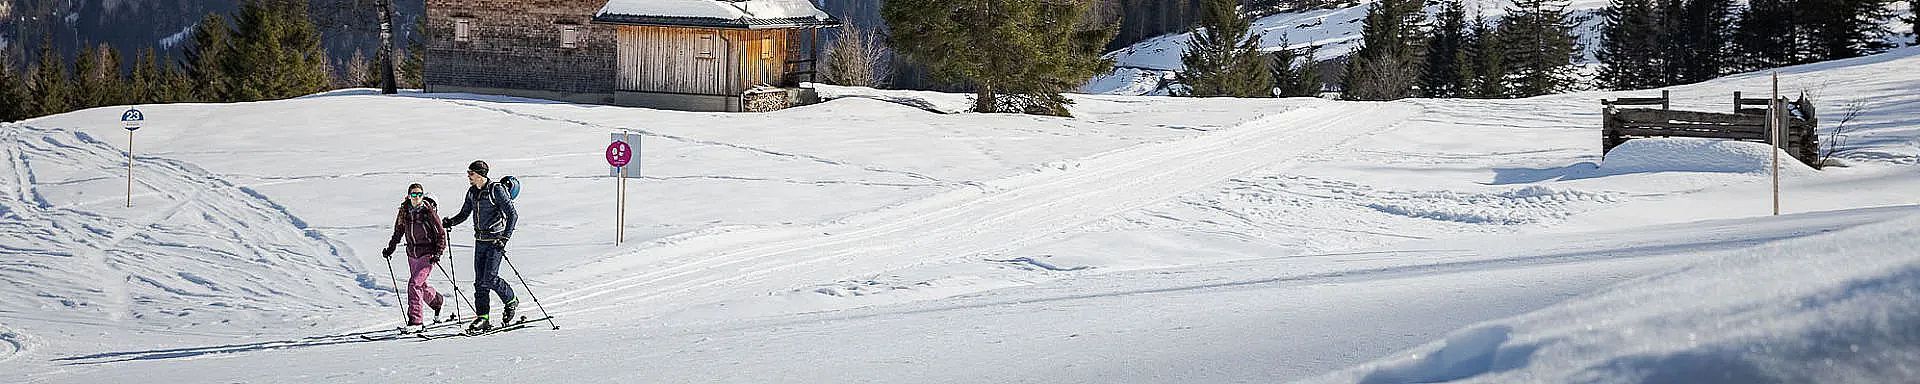 brandnertal-winter-winteraktivitäten-skitour